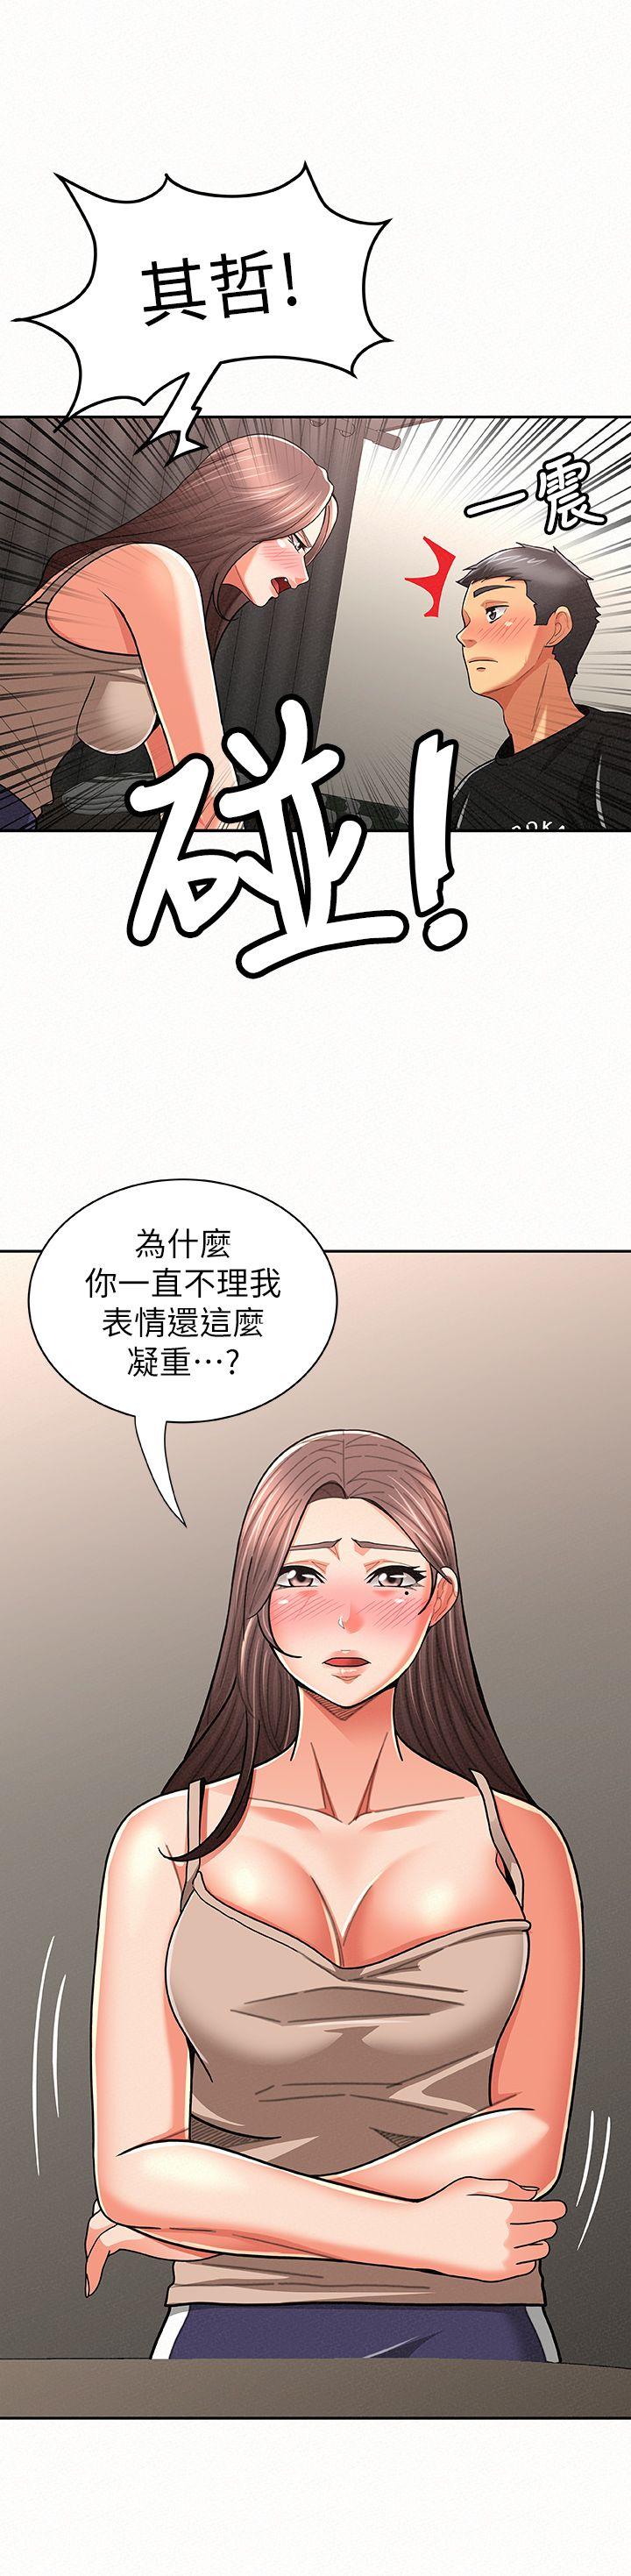 韩国污漫画 報告夫人 第20话-你跟仁惠进展到哪里了? 22